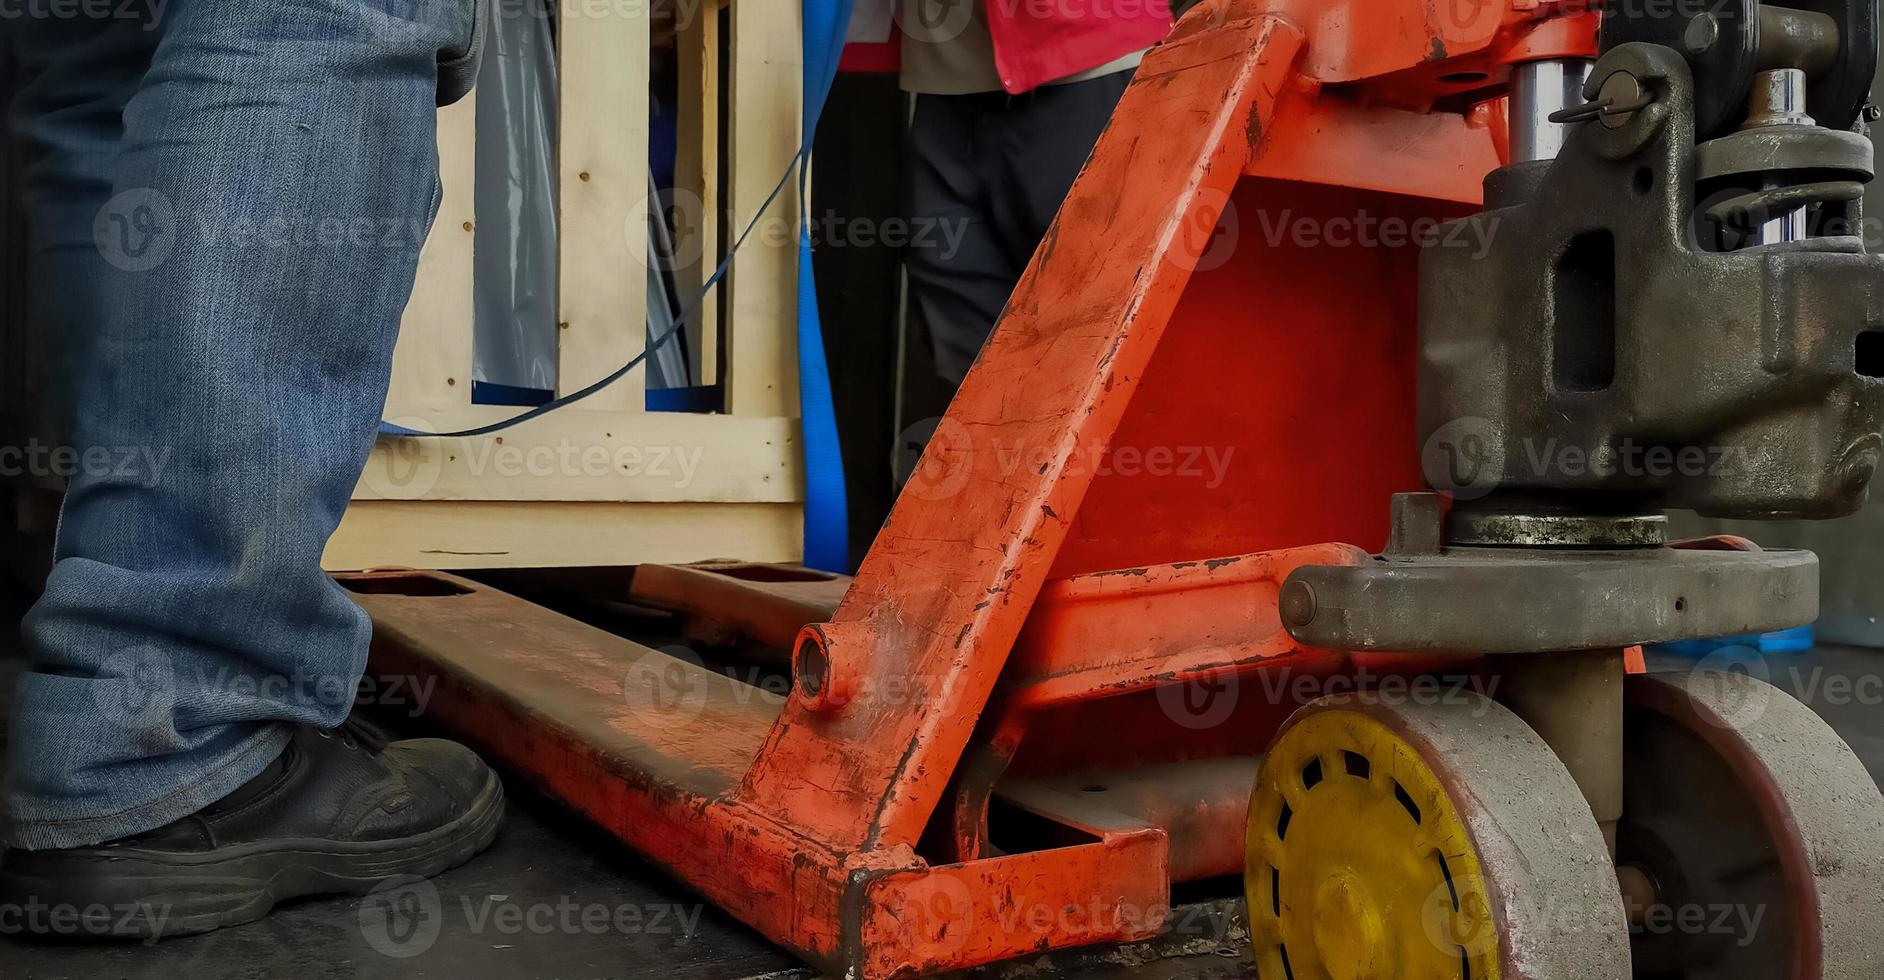 vorkheftruckstapelaar die houten kist van fabrieksmachine in magazijn behandelt. arbeider met veiligheidsschoenen die met handpalletstapelaar werken. goederen vervoer. magazijn en logistiek bedrijf. oranje palletwagen. foto